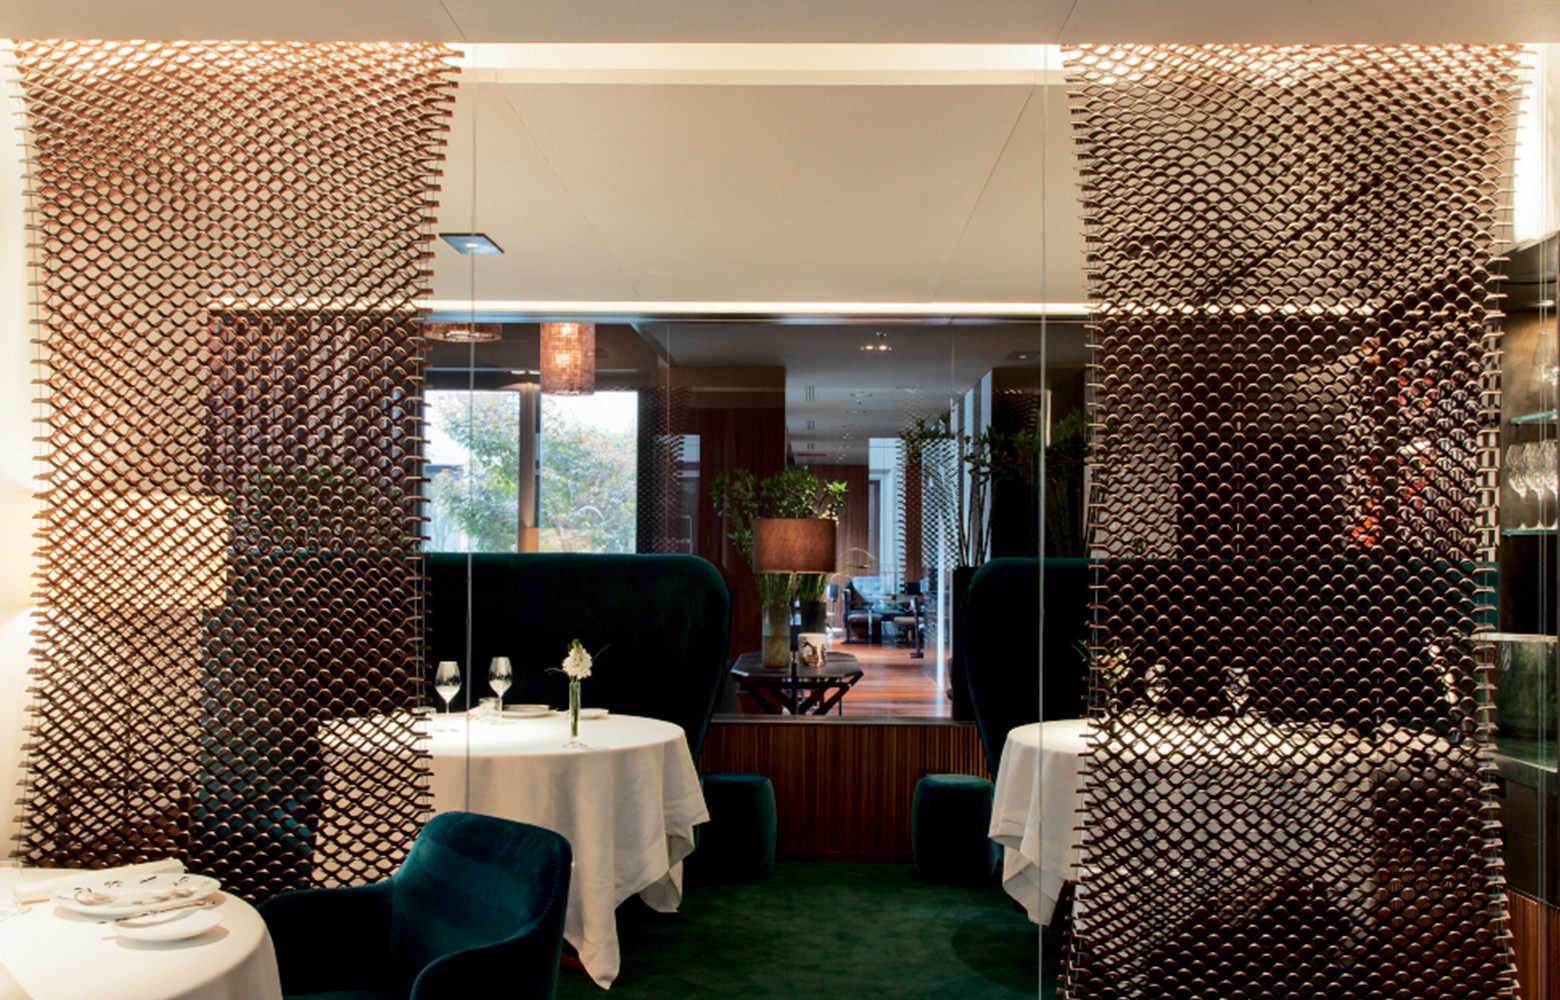 Le lounge et le restaurant Seta affirment une esthétique toute milanaise, faite d’élégance et de sobriété.